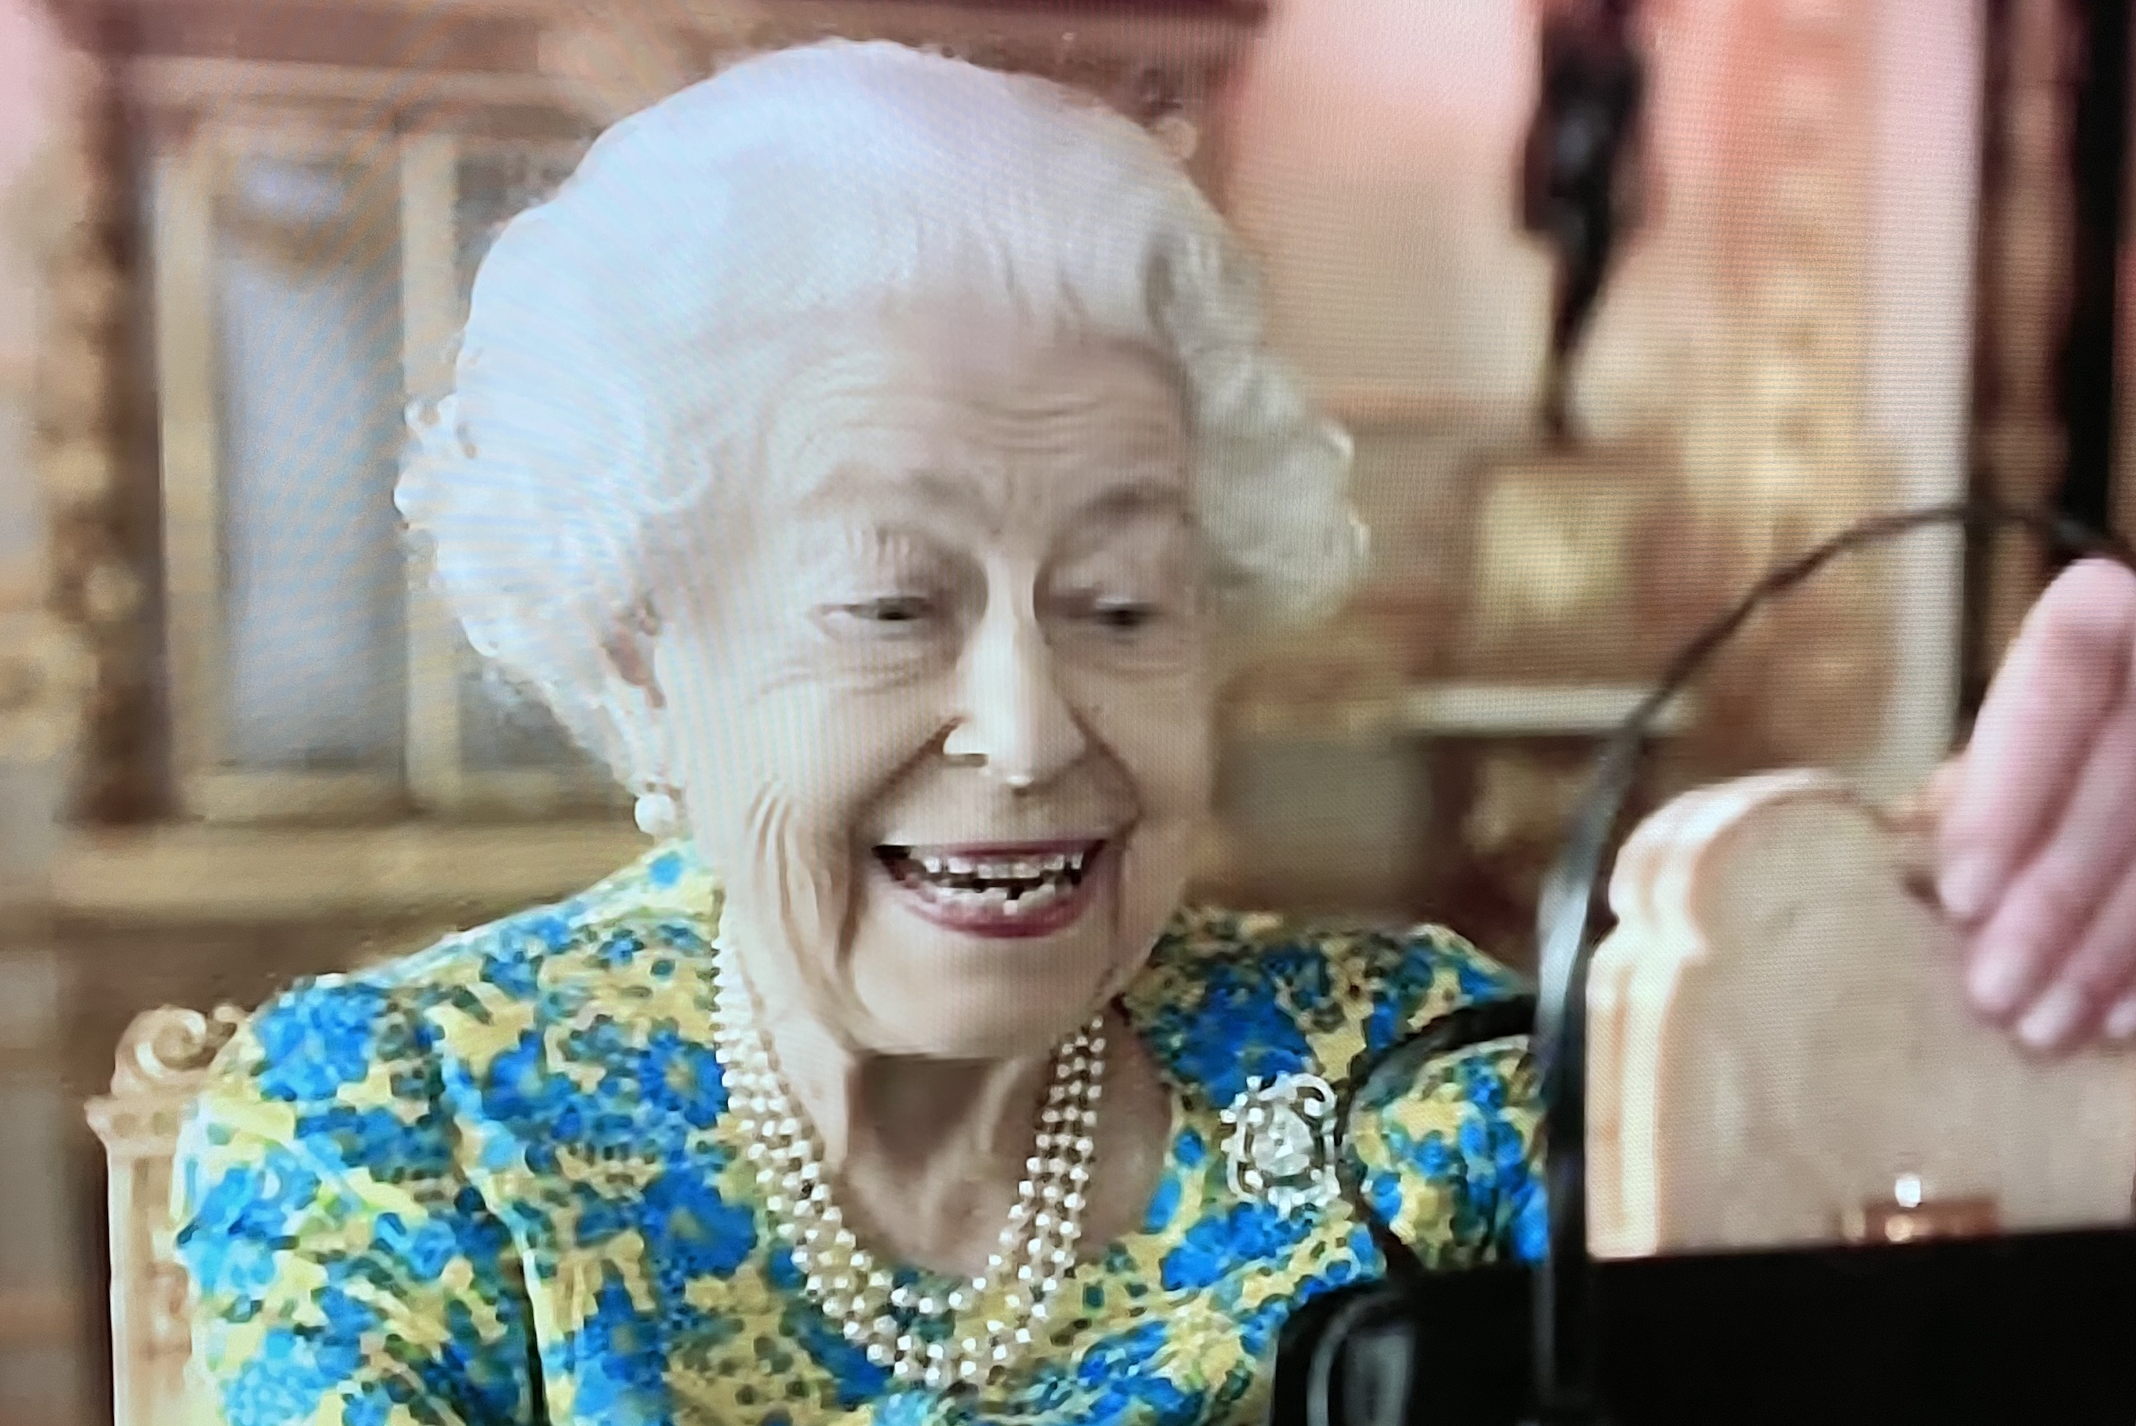 The Queen reveals Jam Sandwich in her bag